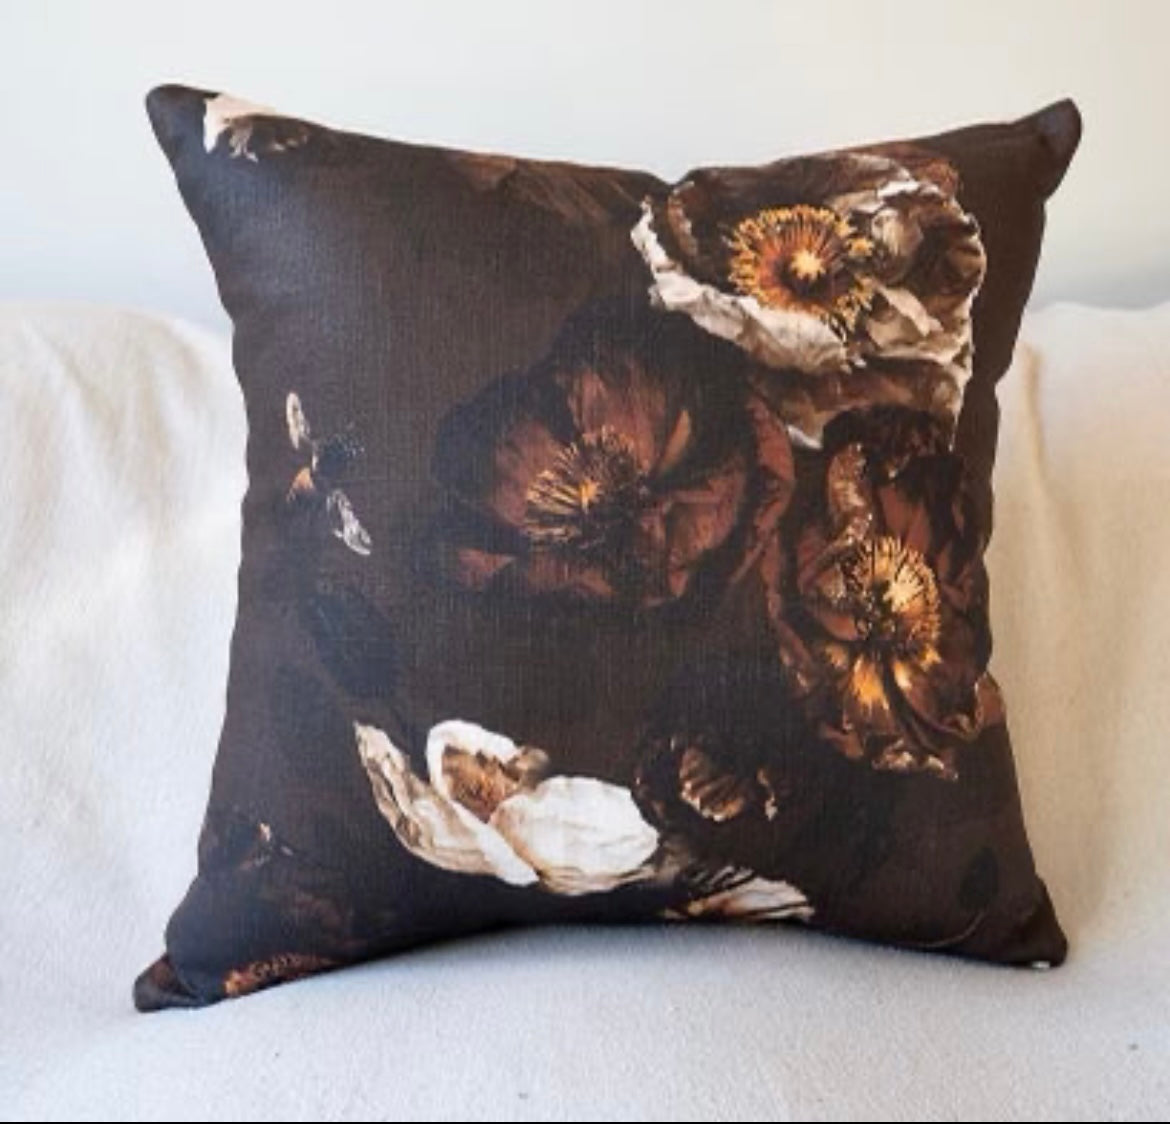 MS CHIEF DESIGNS Cushion in Cocoa Retro Poppies - Linen